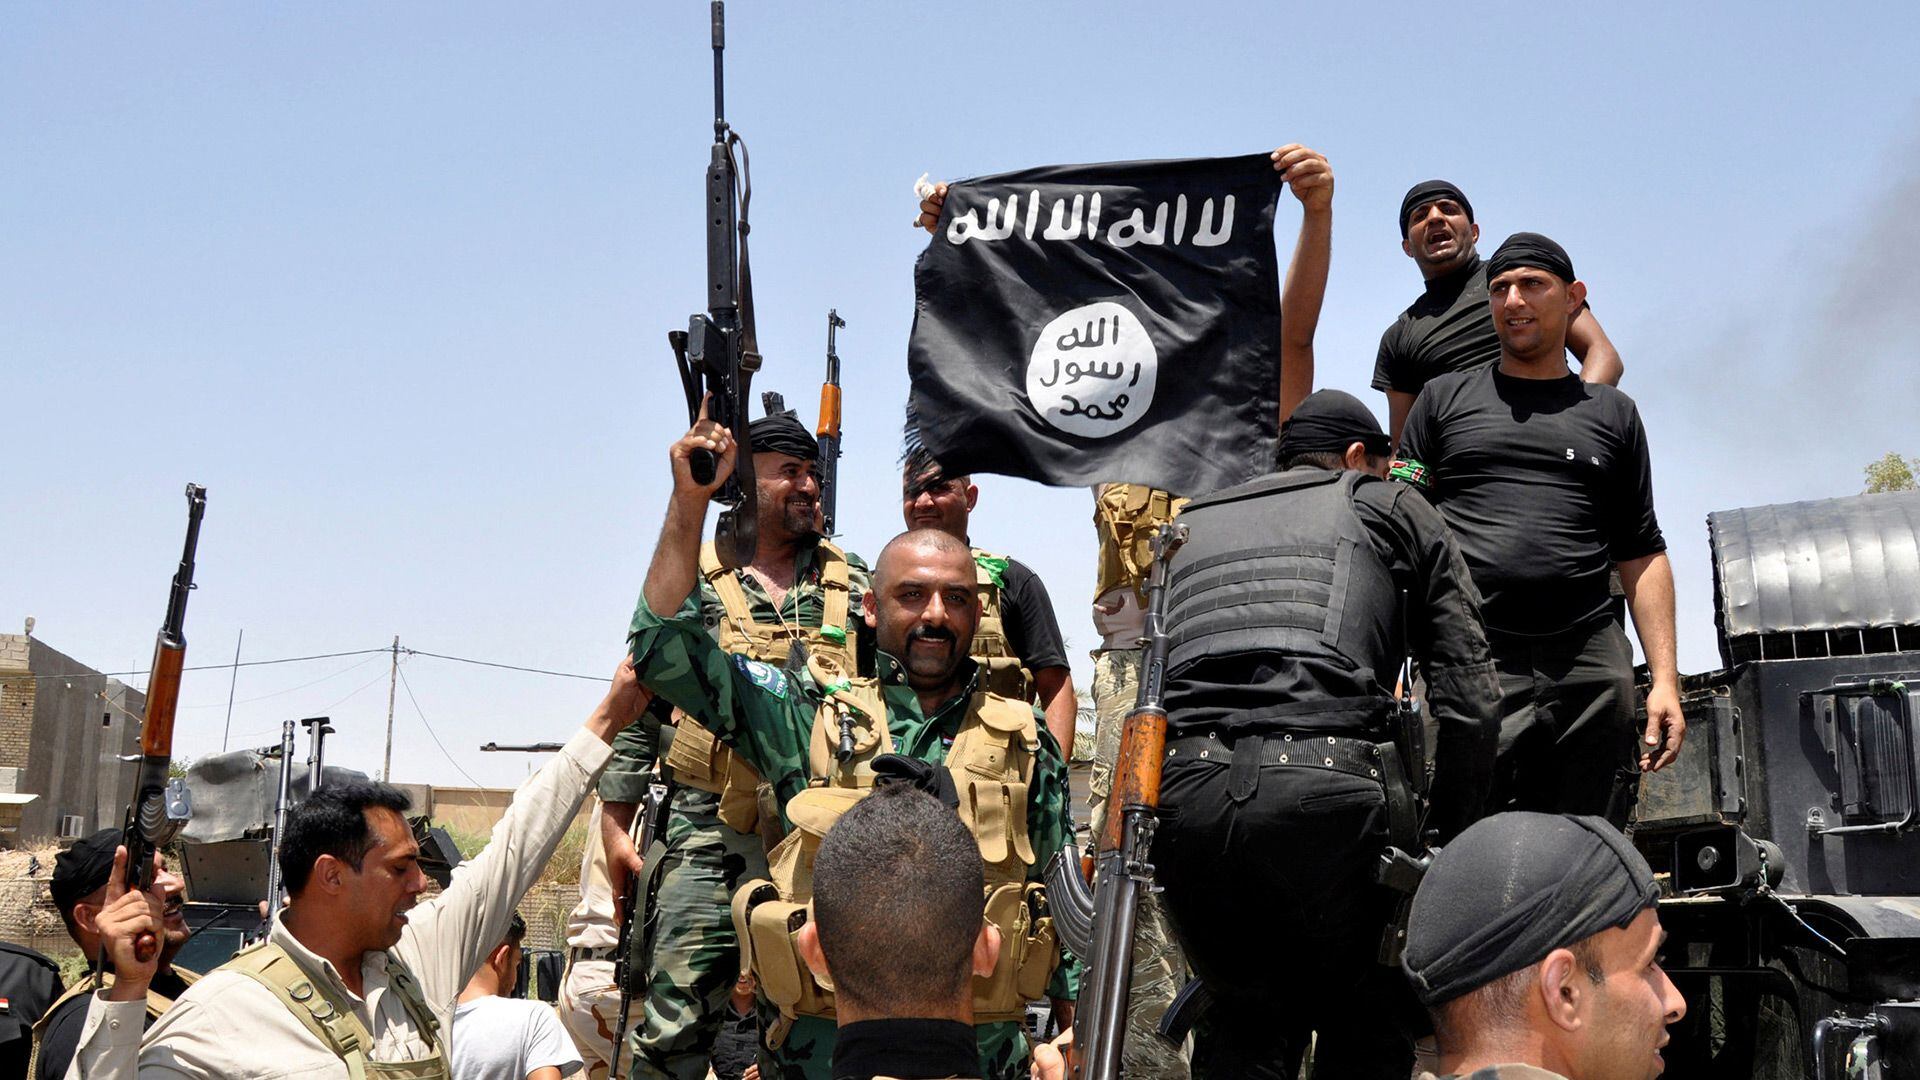 Estado Islámico (ISIS), el grupo militante que alguna vez buscó el control de zonas de Irak y Siria, se atribuyó la responsabilidad del ataque, dijo el canal Telegram del grupo (REUTERS/Stringer/File Photo)